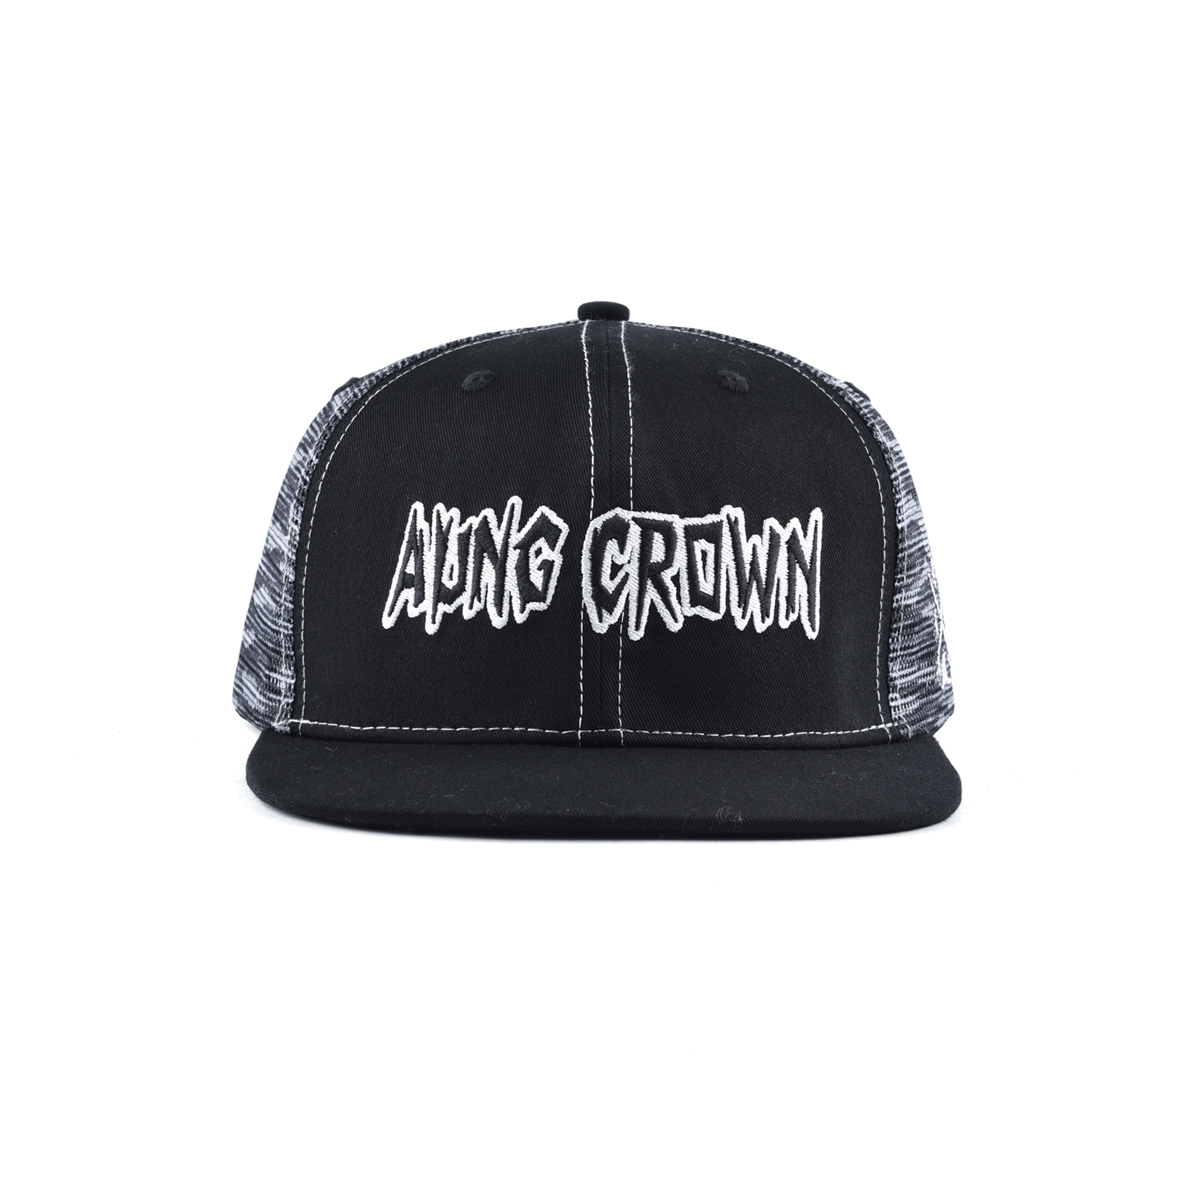 AungCrown street denim style hiphop mesh snapback cap